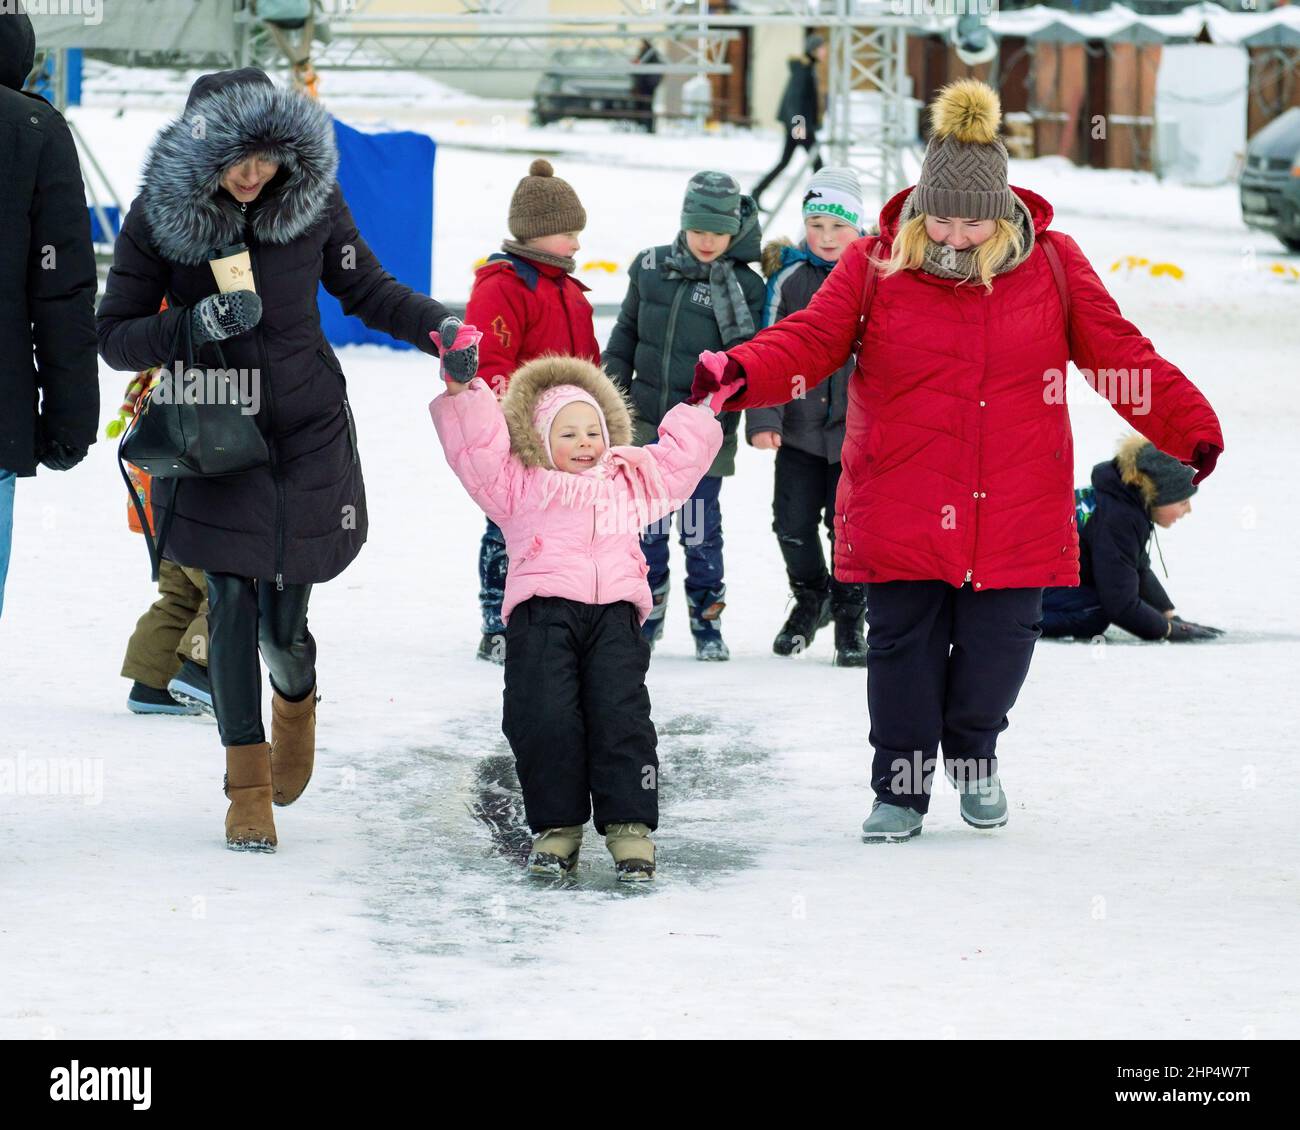 Divertimento invernale. I bambini si cavalcano sul ghiaccio in inverno. I genitori sono con loro. Foto Stock